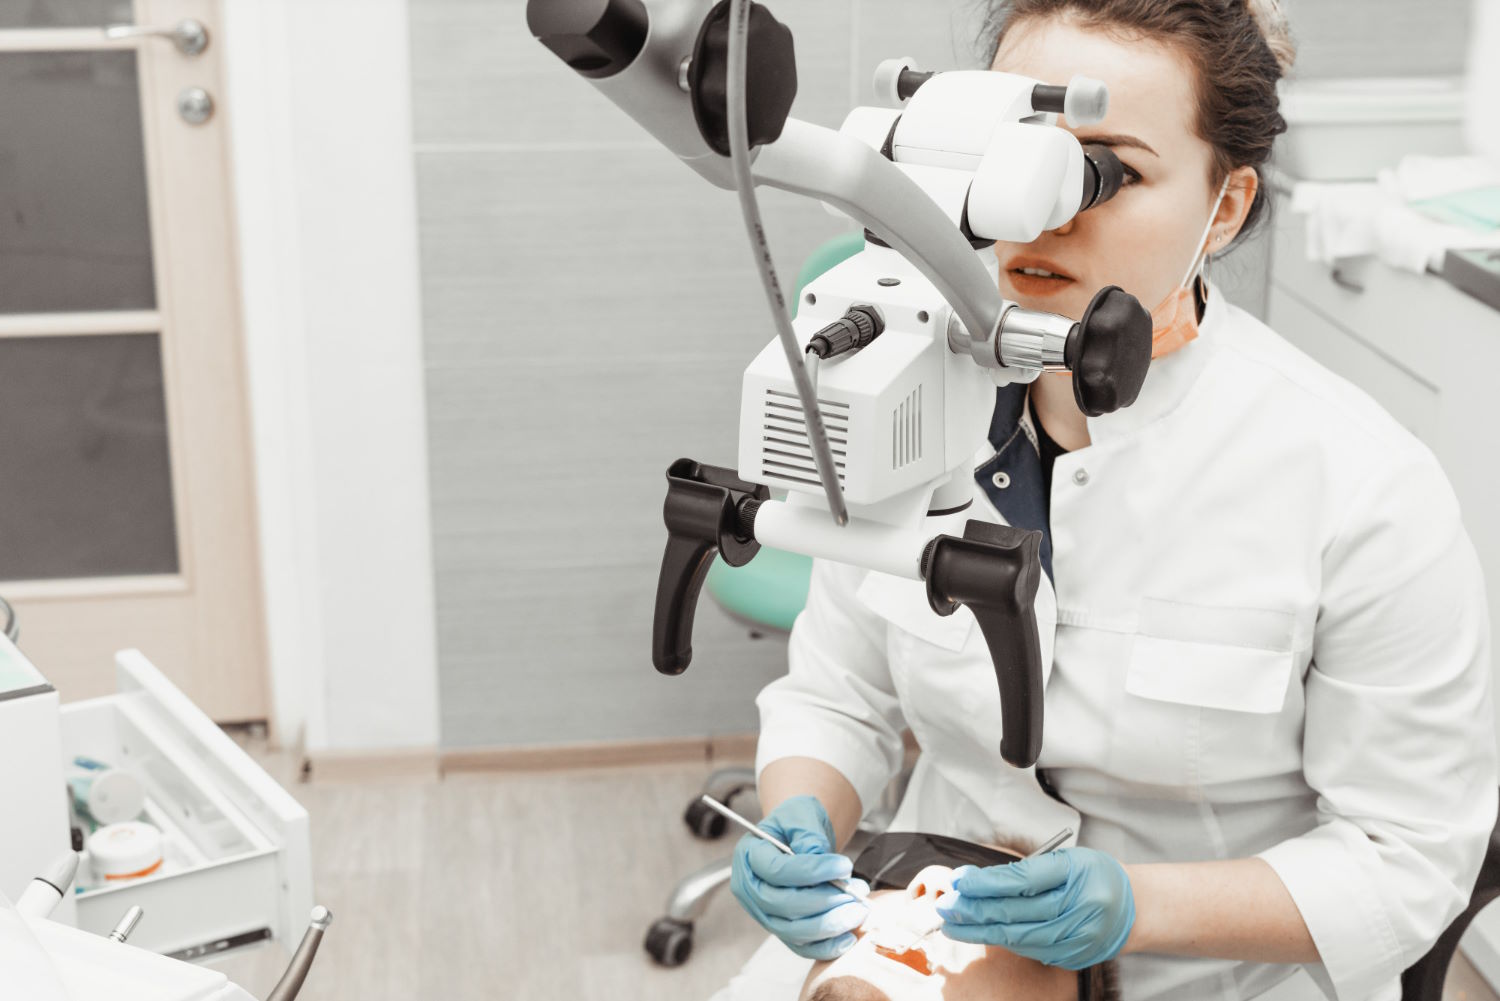 Leczenie zębów pod mikroskopem – jak to wygląda?